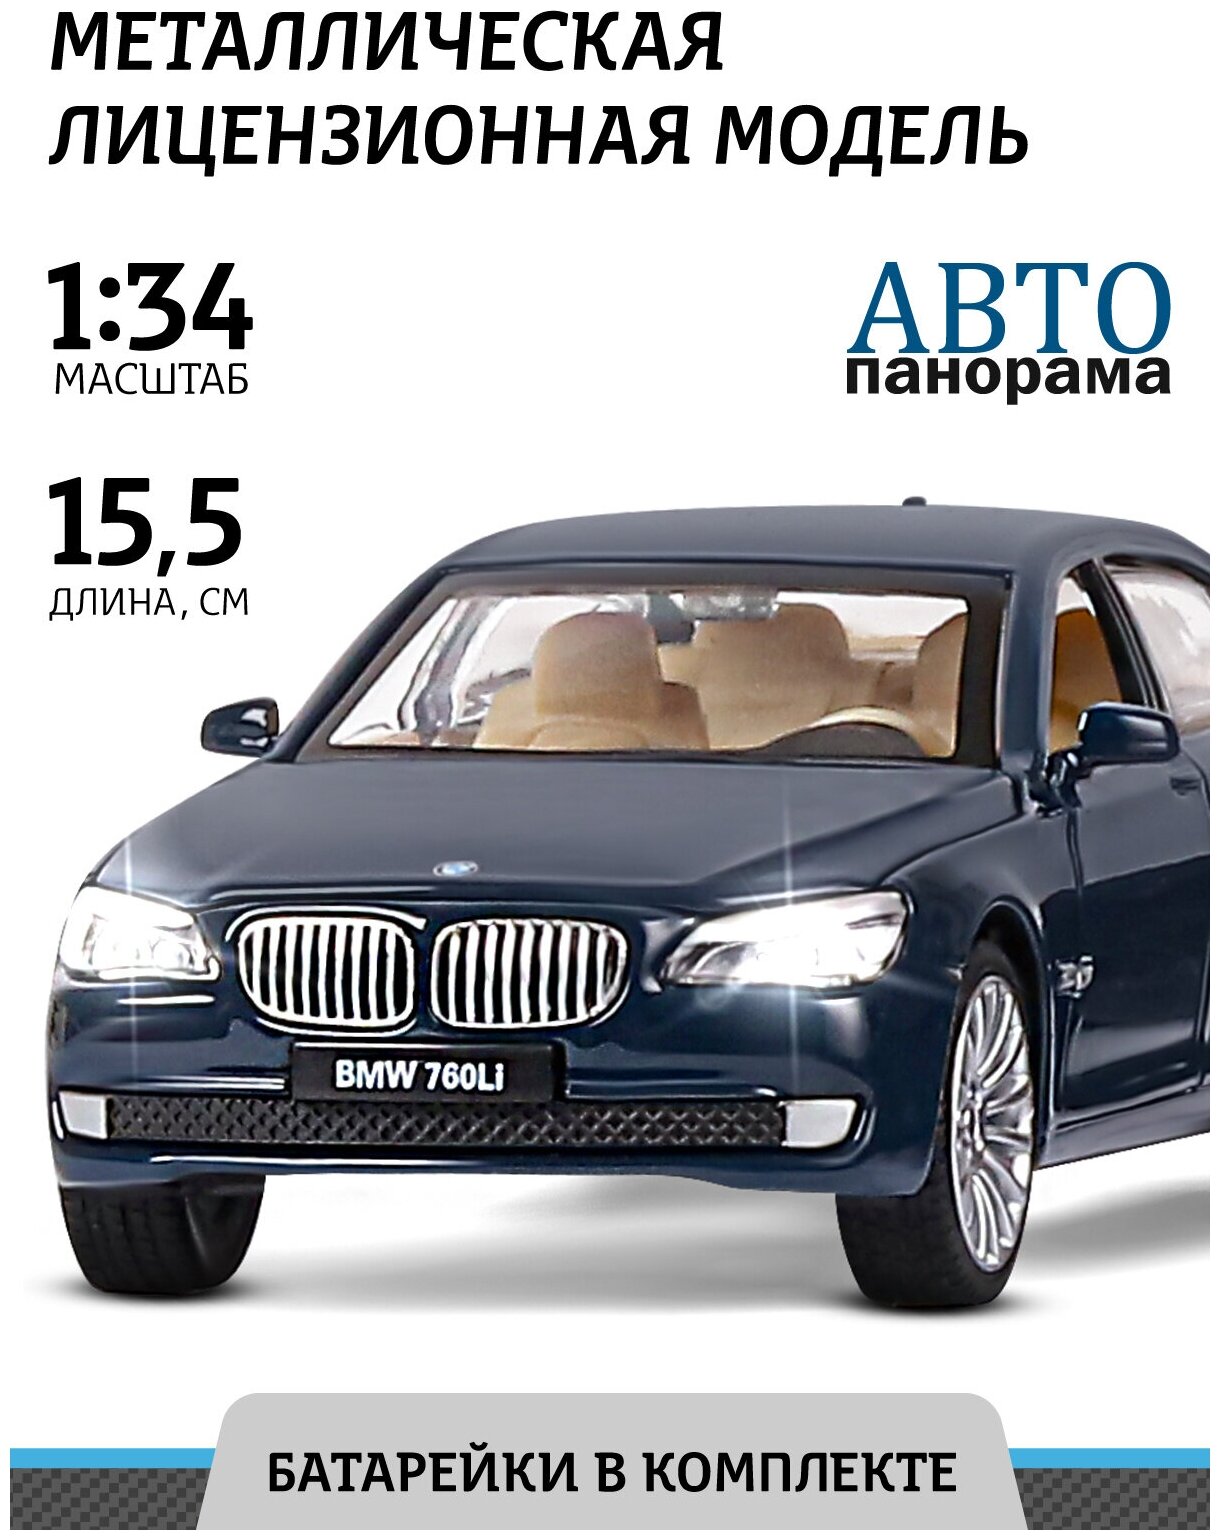 Легковой автомобиль Автопанорама BMW 760LI JB1251035 1:34 15.5 см